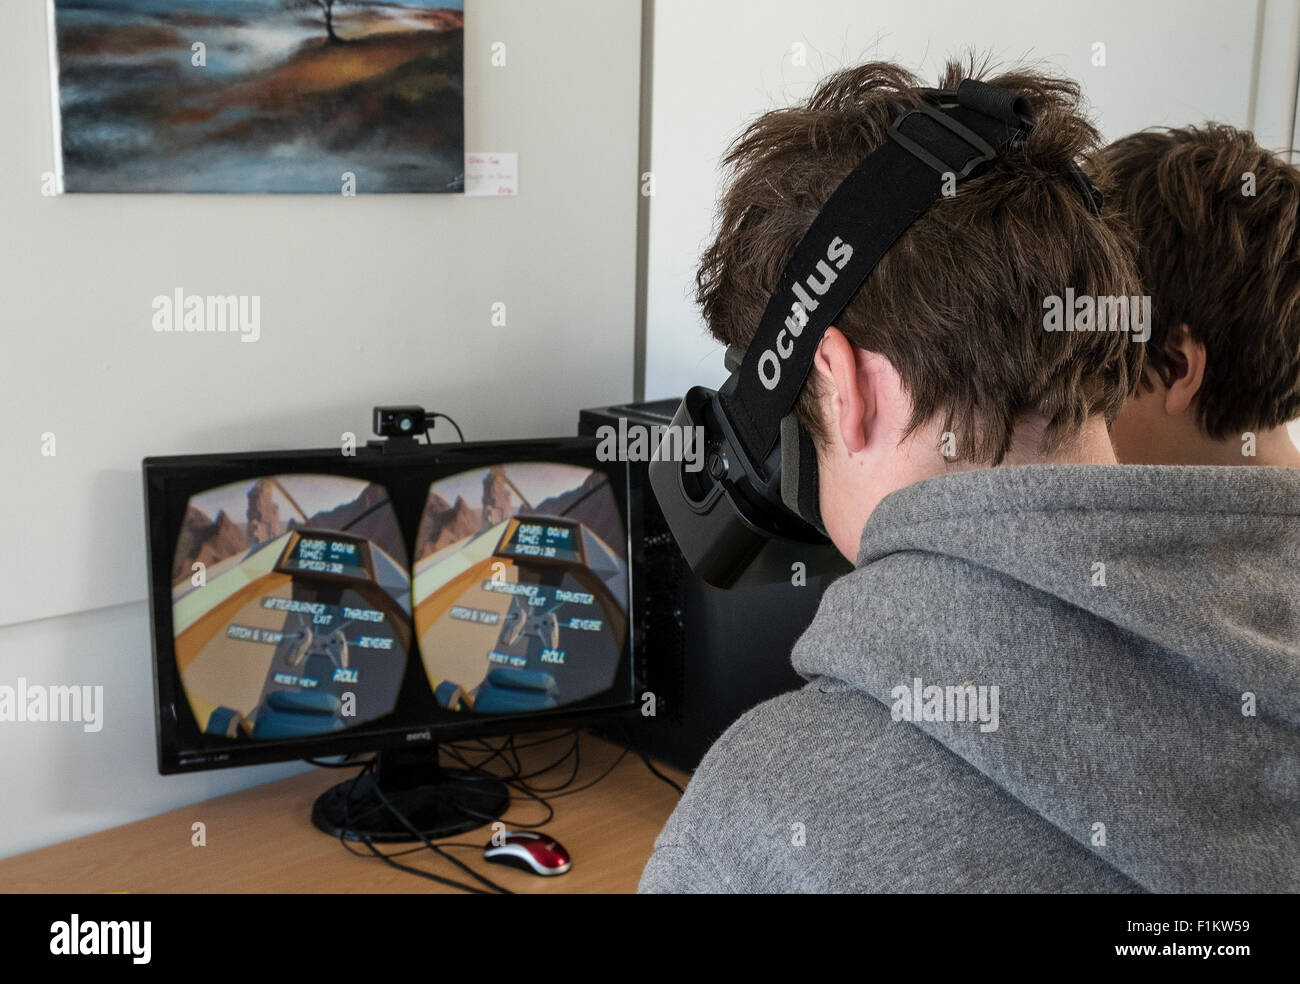 Teenage boy playing un appareil de réalité virtuelle Oculus Rift Banque D'Images